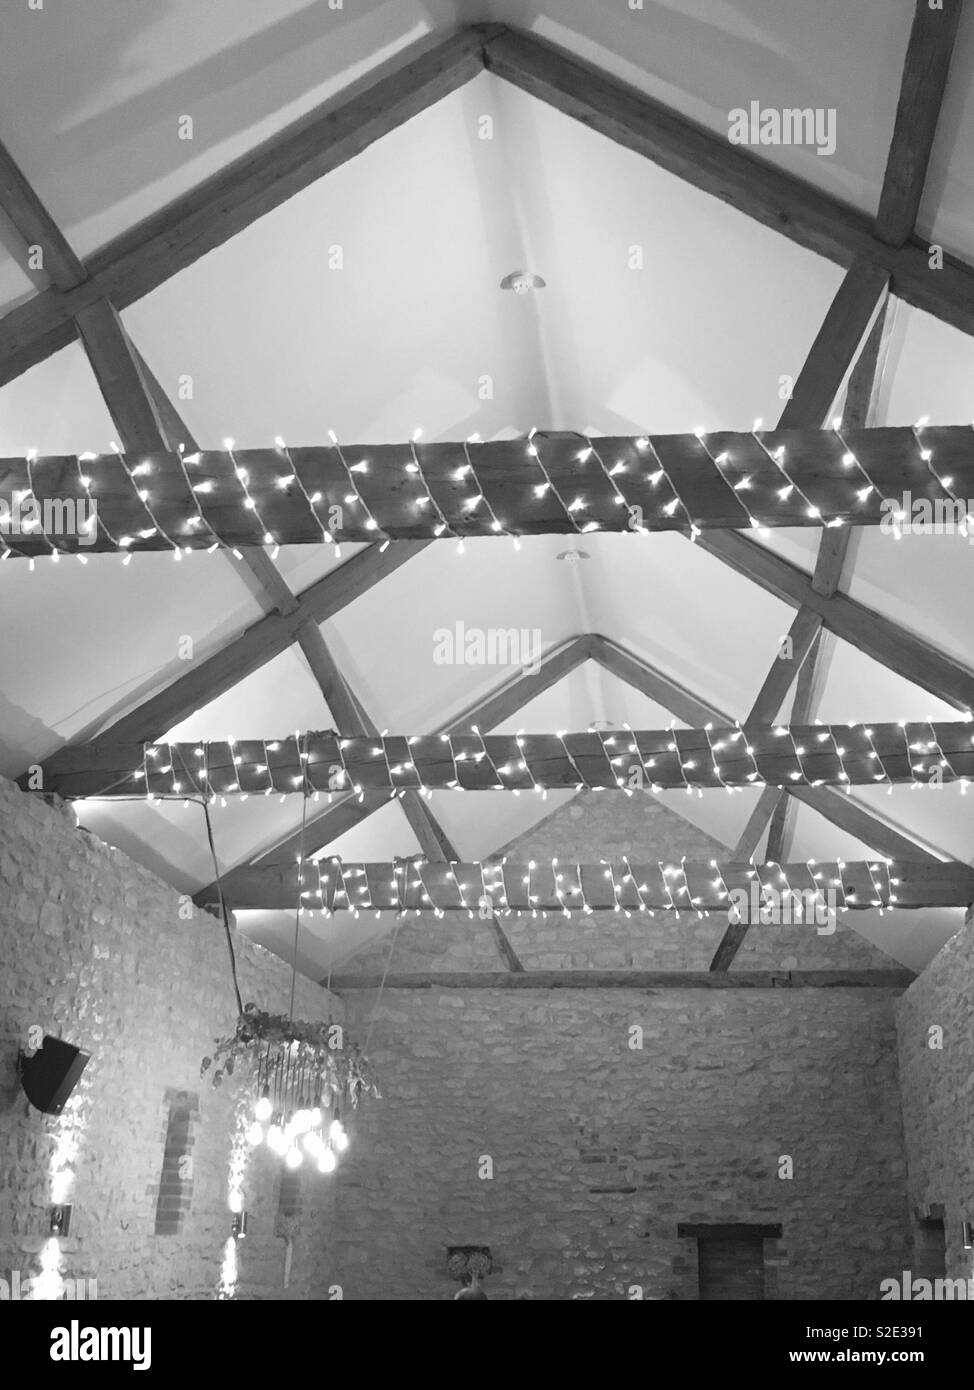 Un techo abovedado en una casa de granja británica con las luces de hadas a través de las vigas de madera en monocromo. Foto de stock